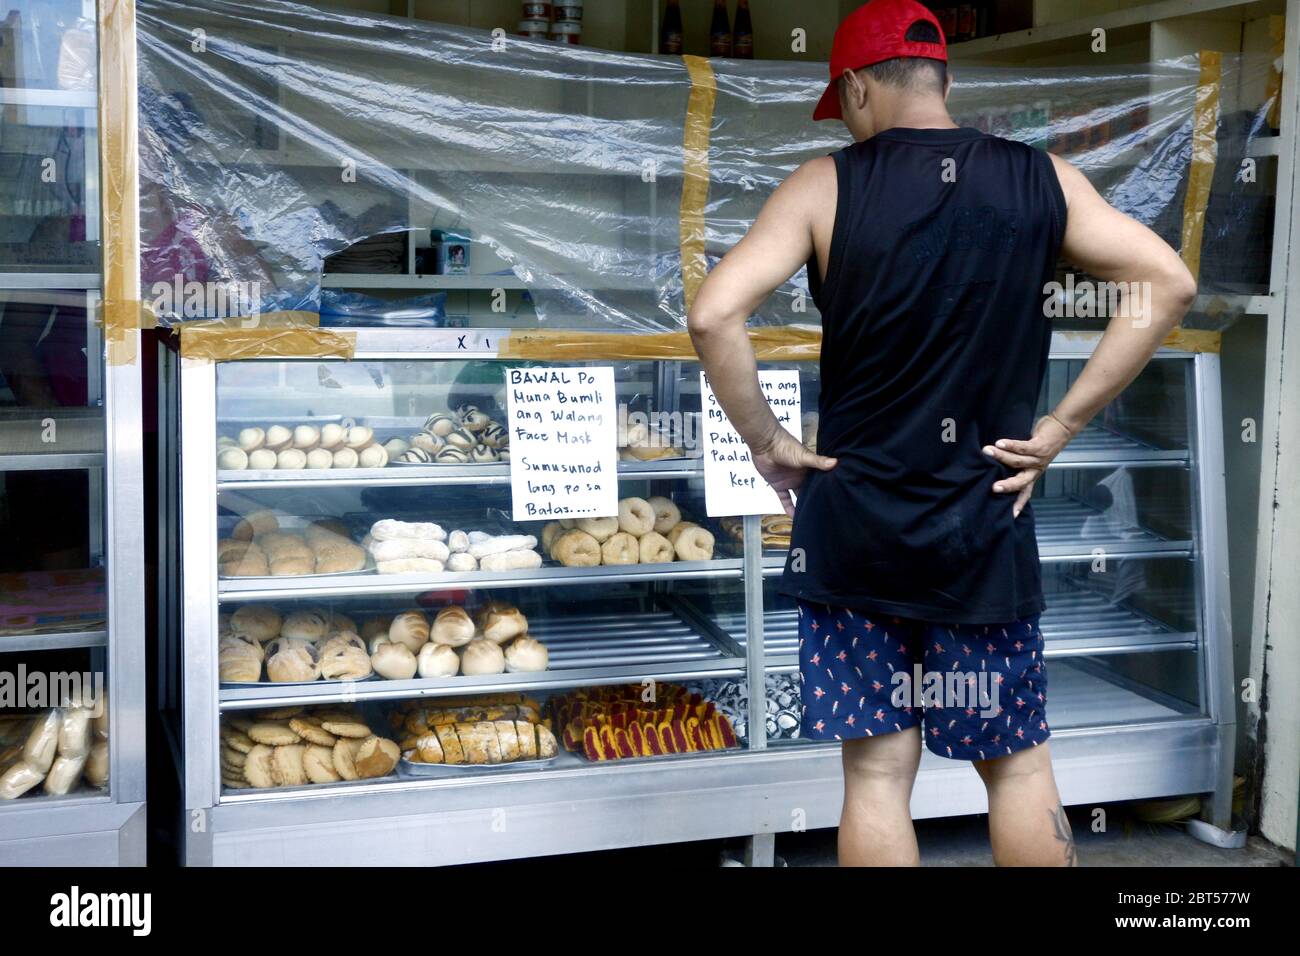 Antipolo City, Philippines - 21 mai 2020 : les clients achètent dans une boulangerie avec barrière plastique comme protection pendant l'épidémie de virus Covid 19. Banque D'Images